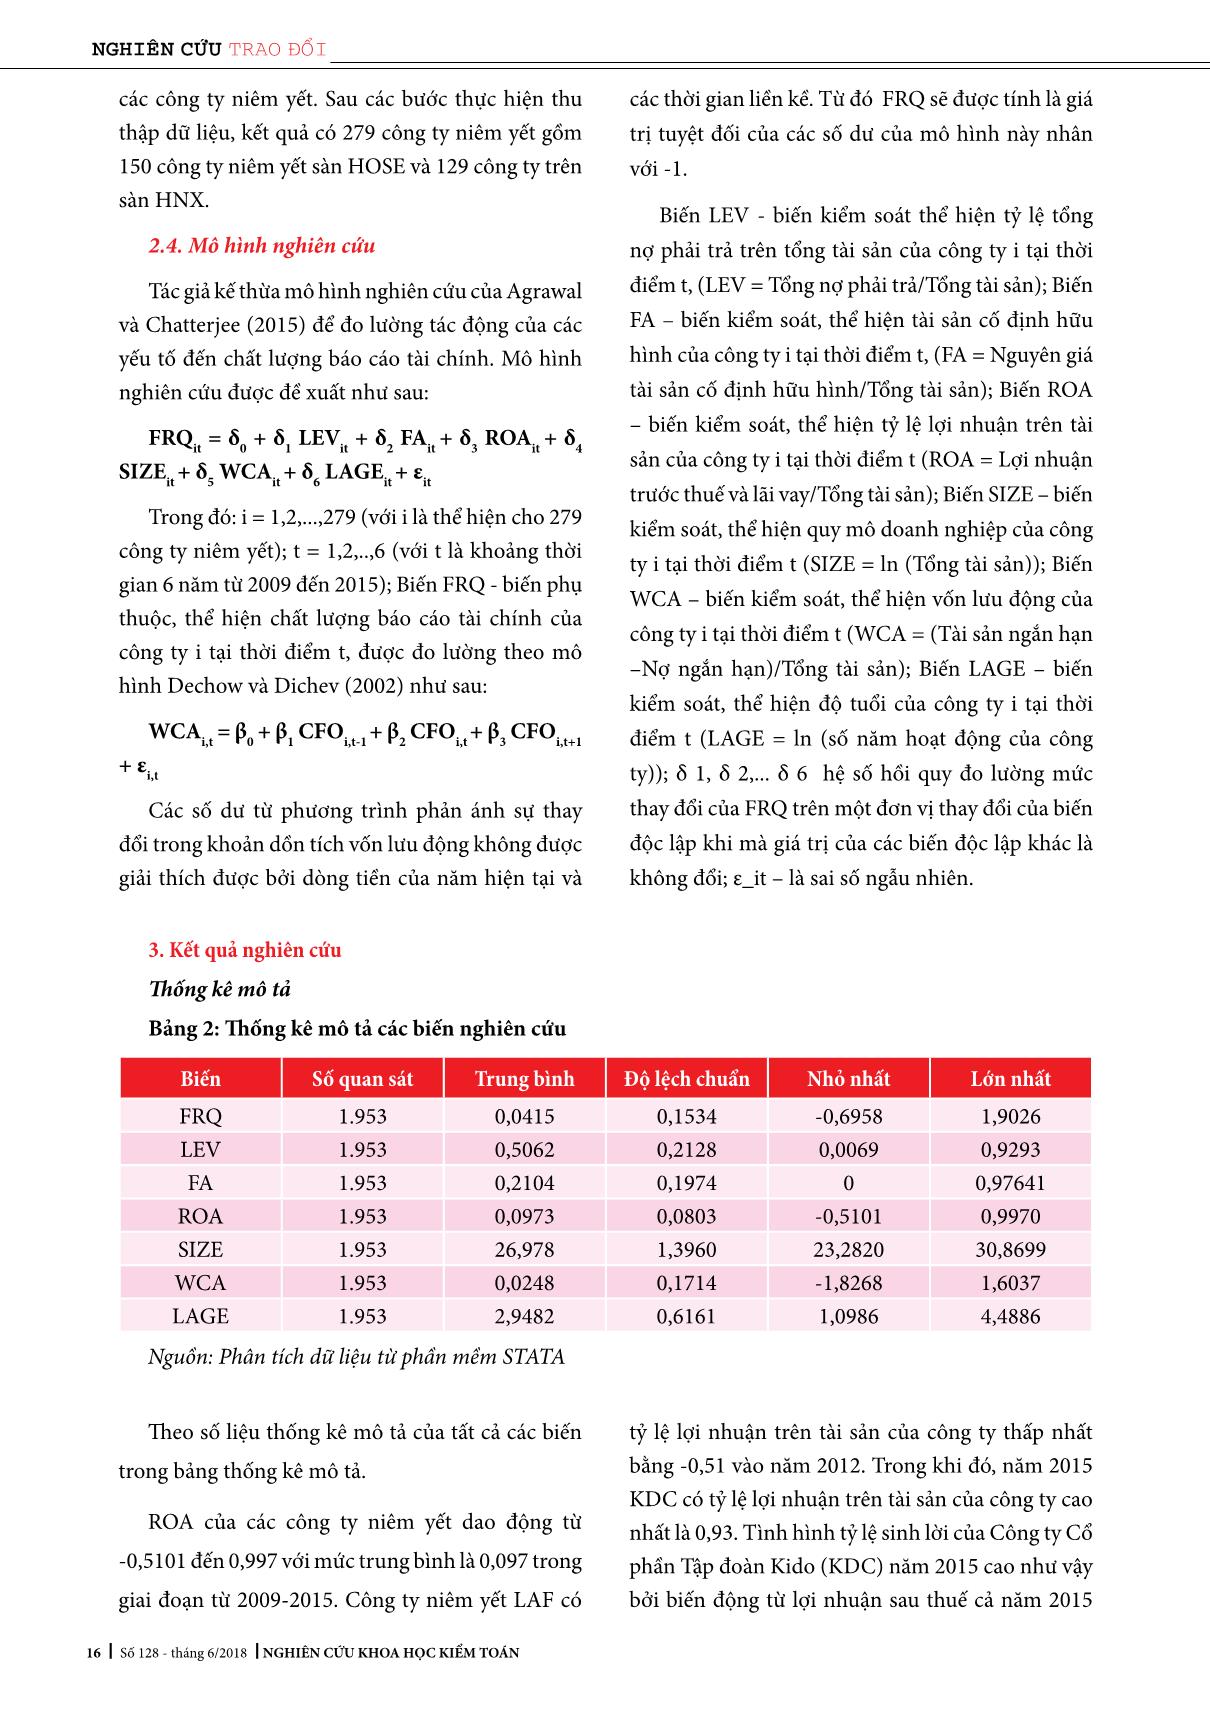 Các yếu tố ảnh hưởng đến chất lượng Báo cáo tài chính: Nghiên cứu thực nghiệm tại Việt Nam trang 4